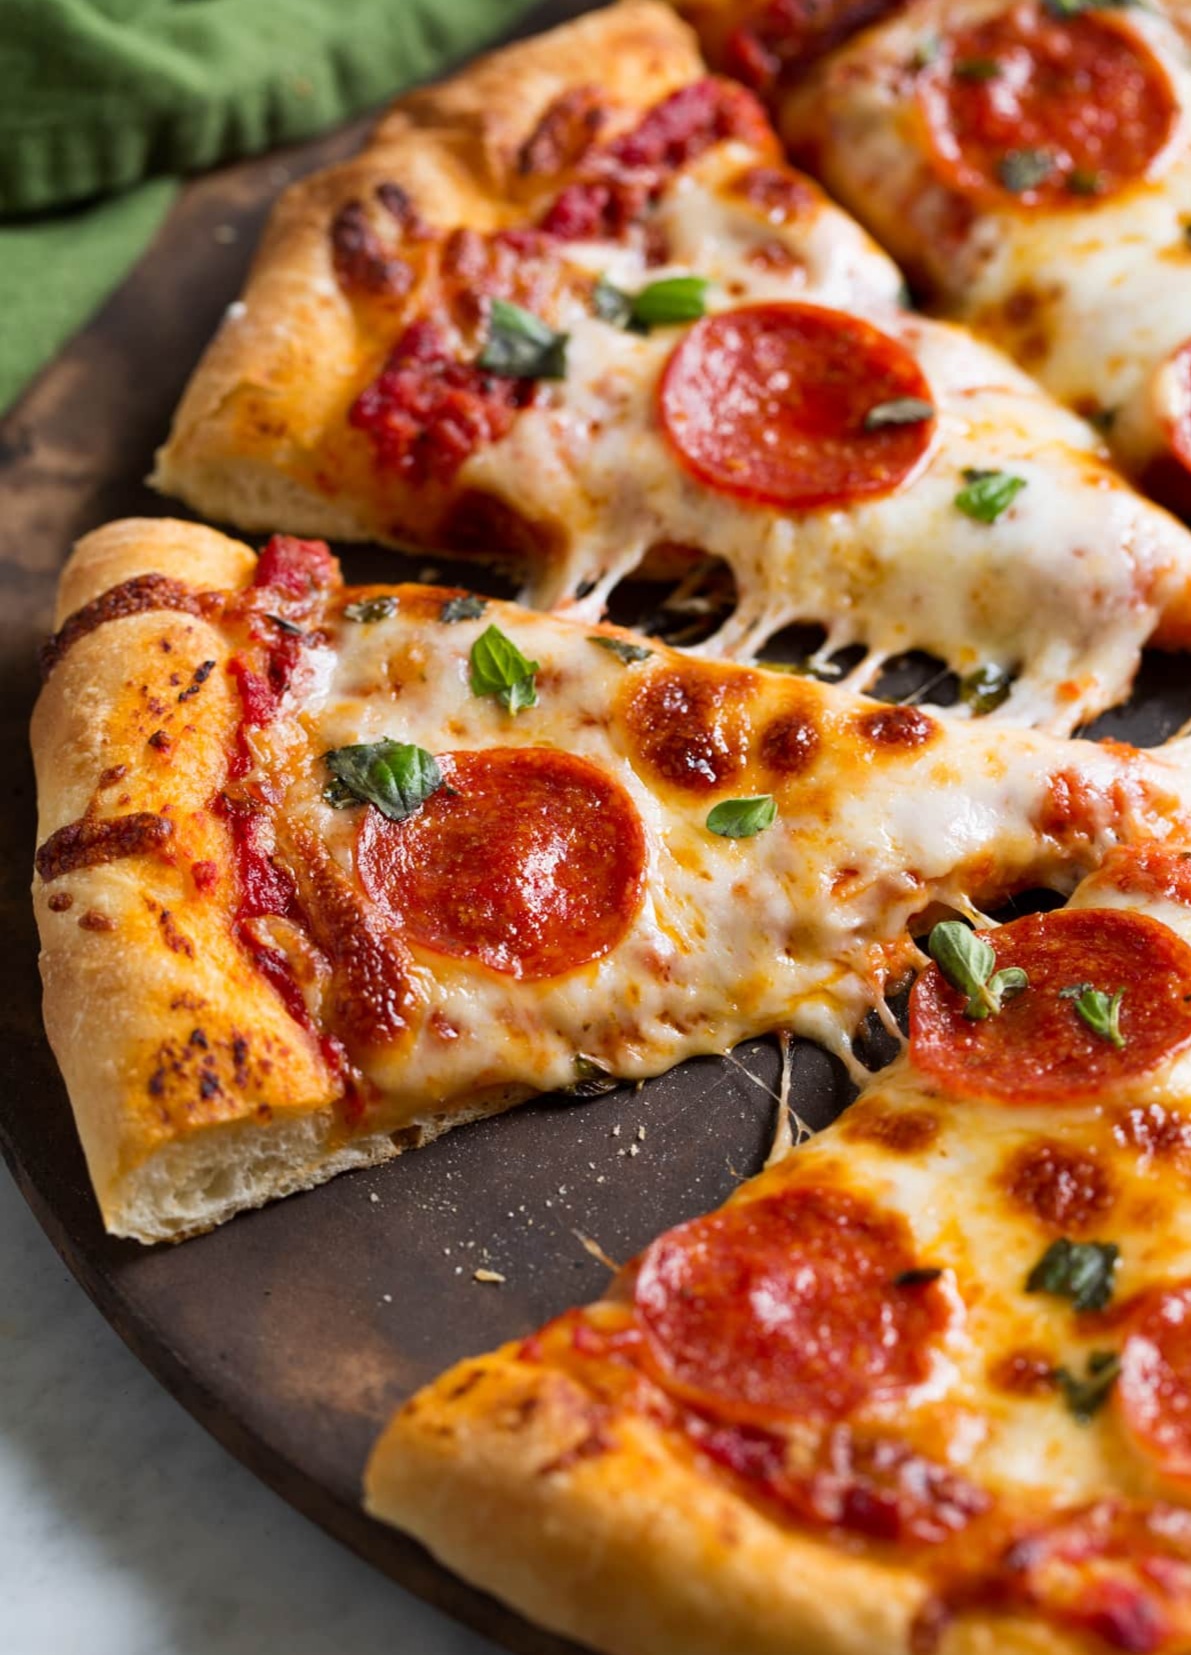 شرح مبسط لكيفية عمل البيتزا الايطالية فى المنزل بطريقه سهلة و نتائج جيدة